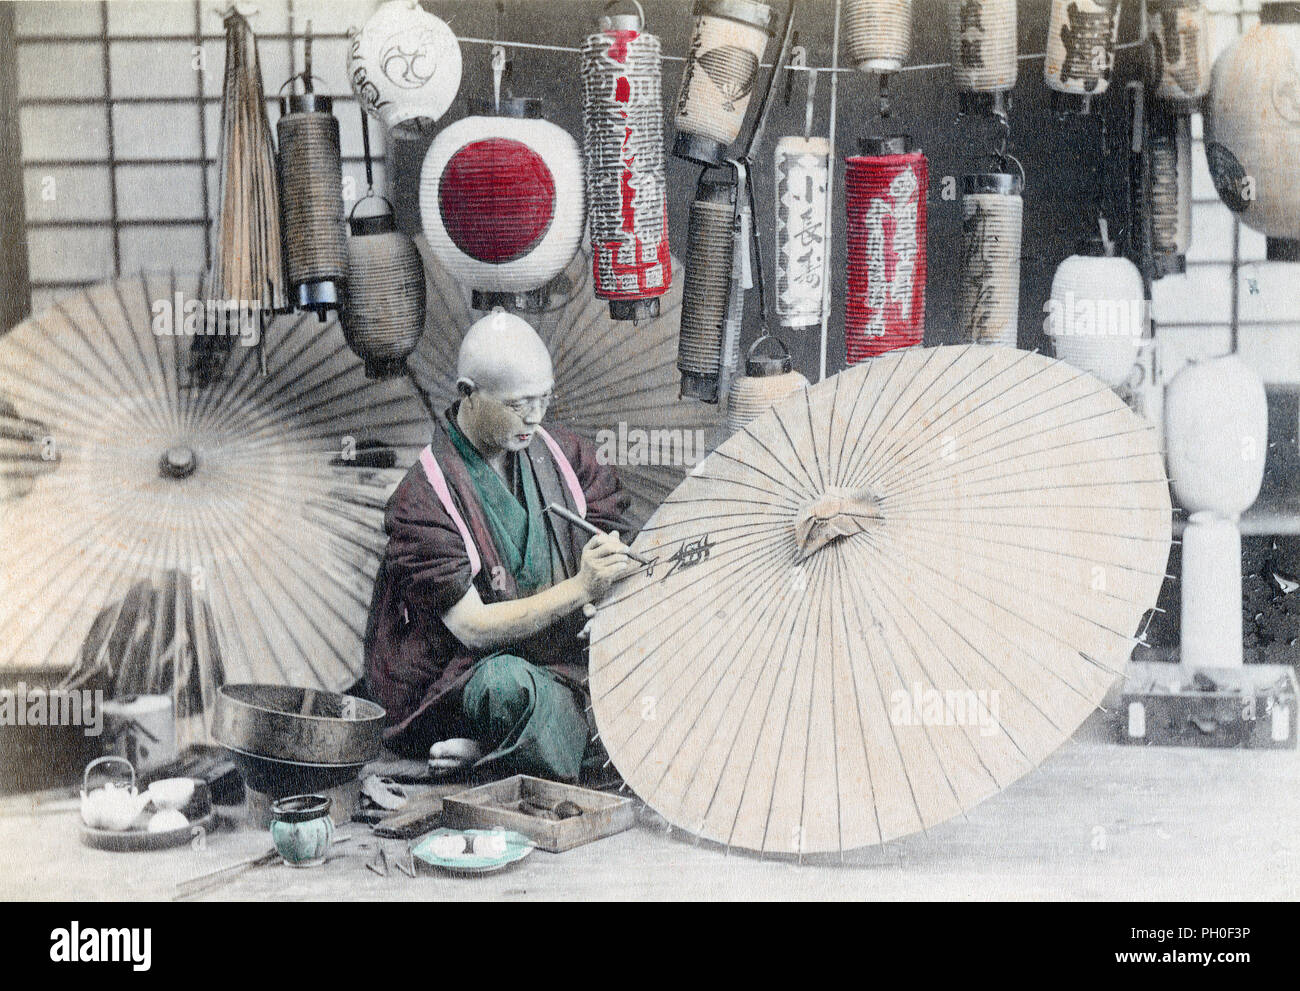 [ 1890 - Japon Japanese Parasol Bouilloire ] - une bouilloire de lanternes de papier et des parasols utilise un pinceau pour écrire des kanji (caractères japonais) sur un parasol. Cette image est liée à 70219-0018 - Lanterne électrique. 19e siècle vintage albumen photo. Banque D'Images